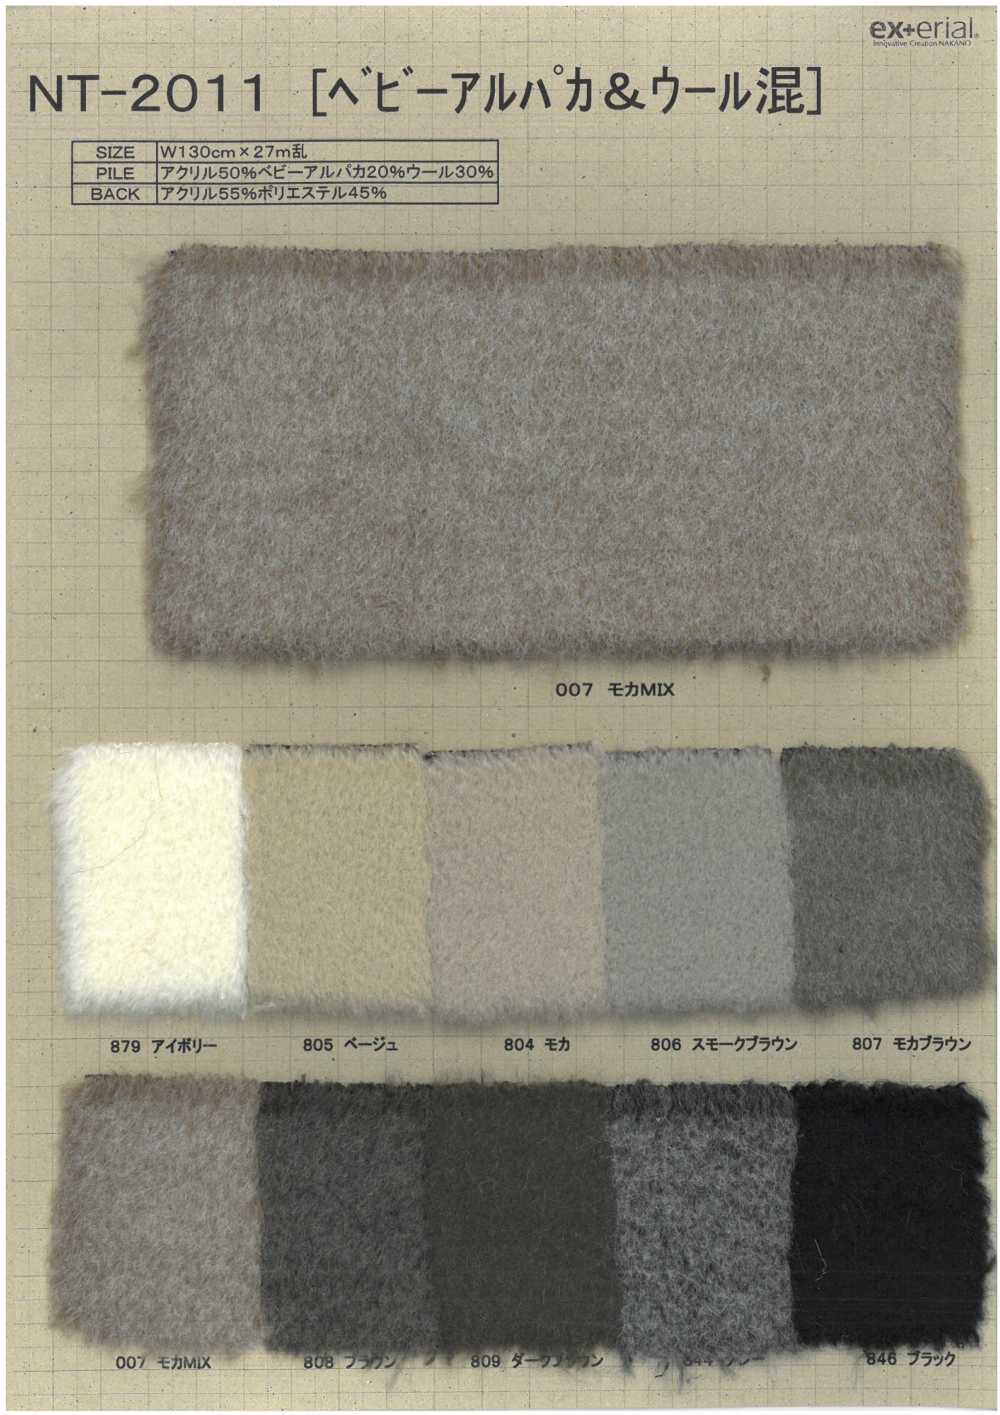 NT-2011 Fourrure Artisanale [mélange Bébé Alpaga][Fabrication De Textile] Industrie Du Jersey Nakano